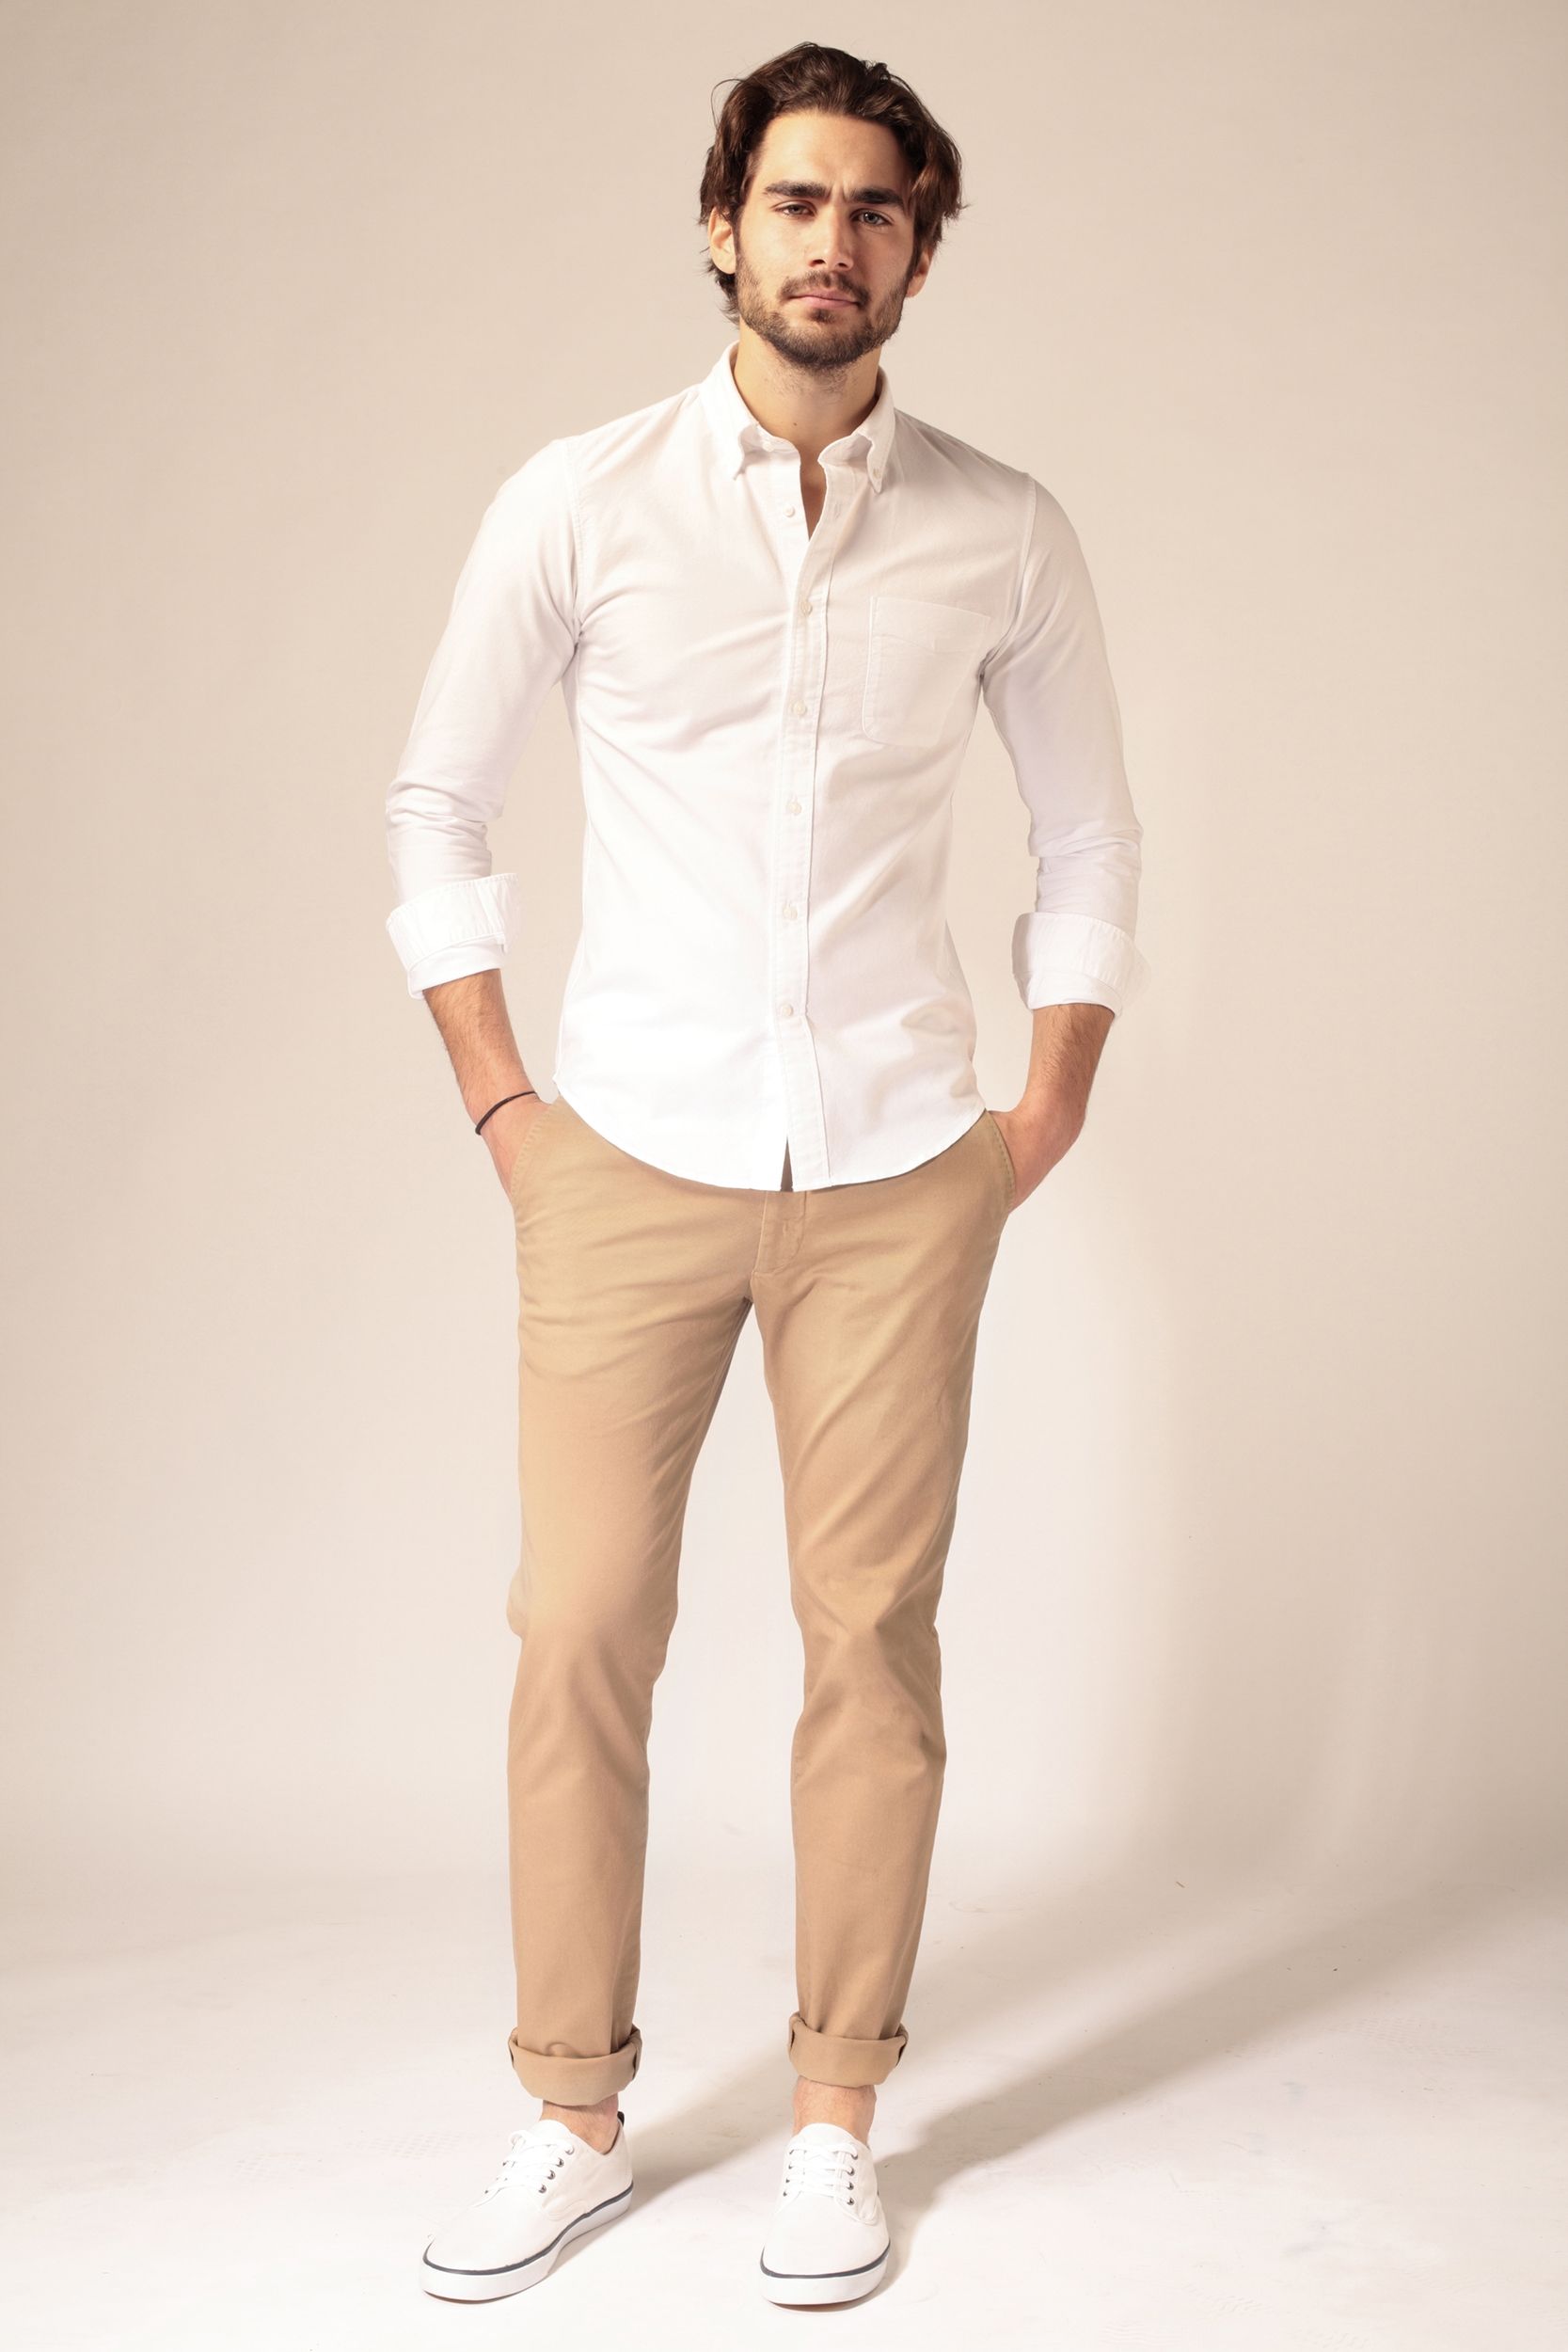 pantalon beige chemise blanche homme